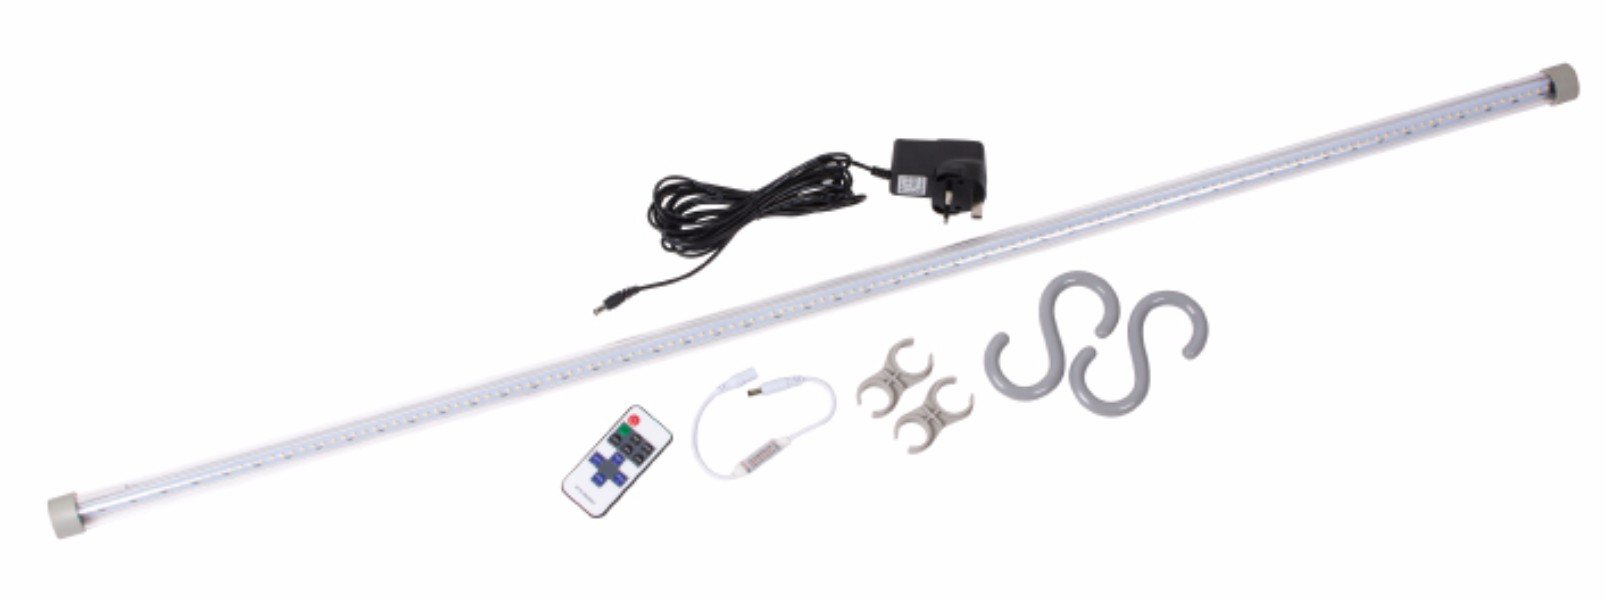 Dometic Sabre Link 150 LED Starter Kit